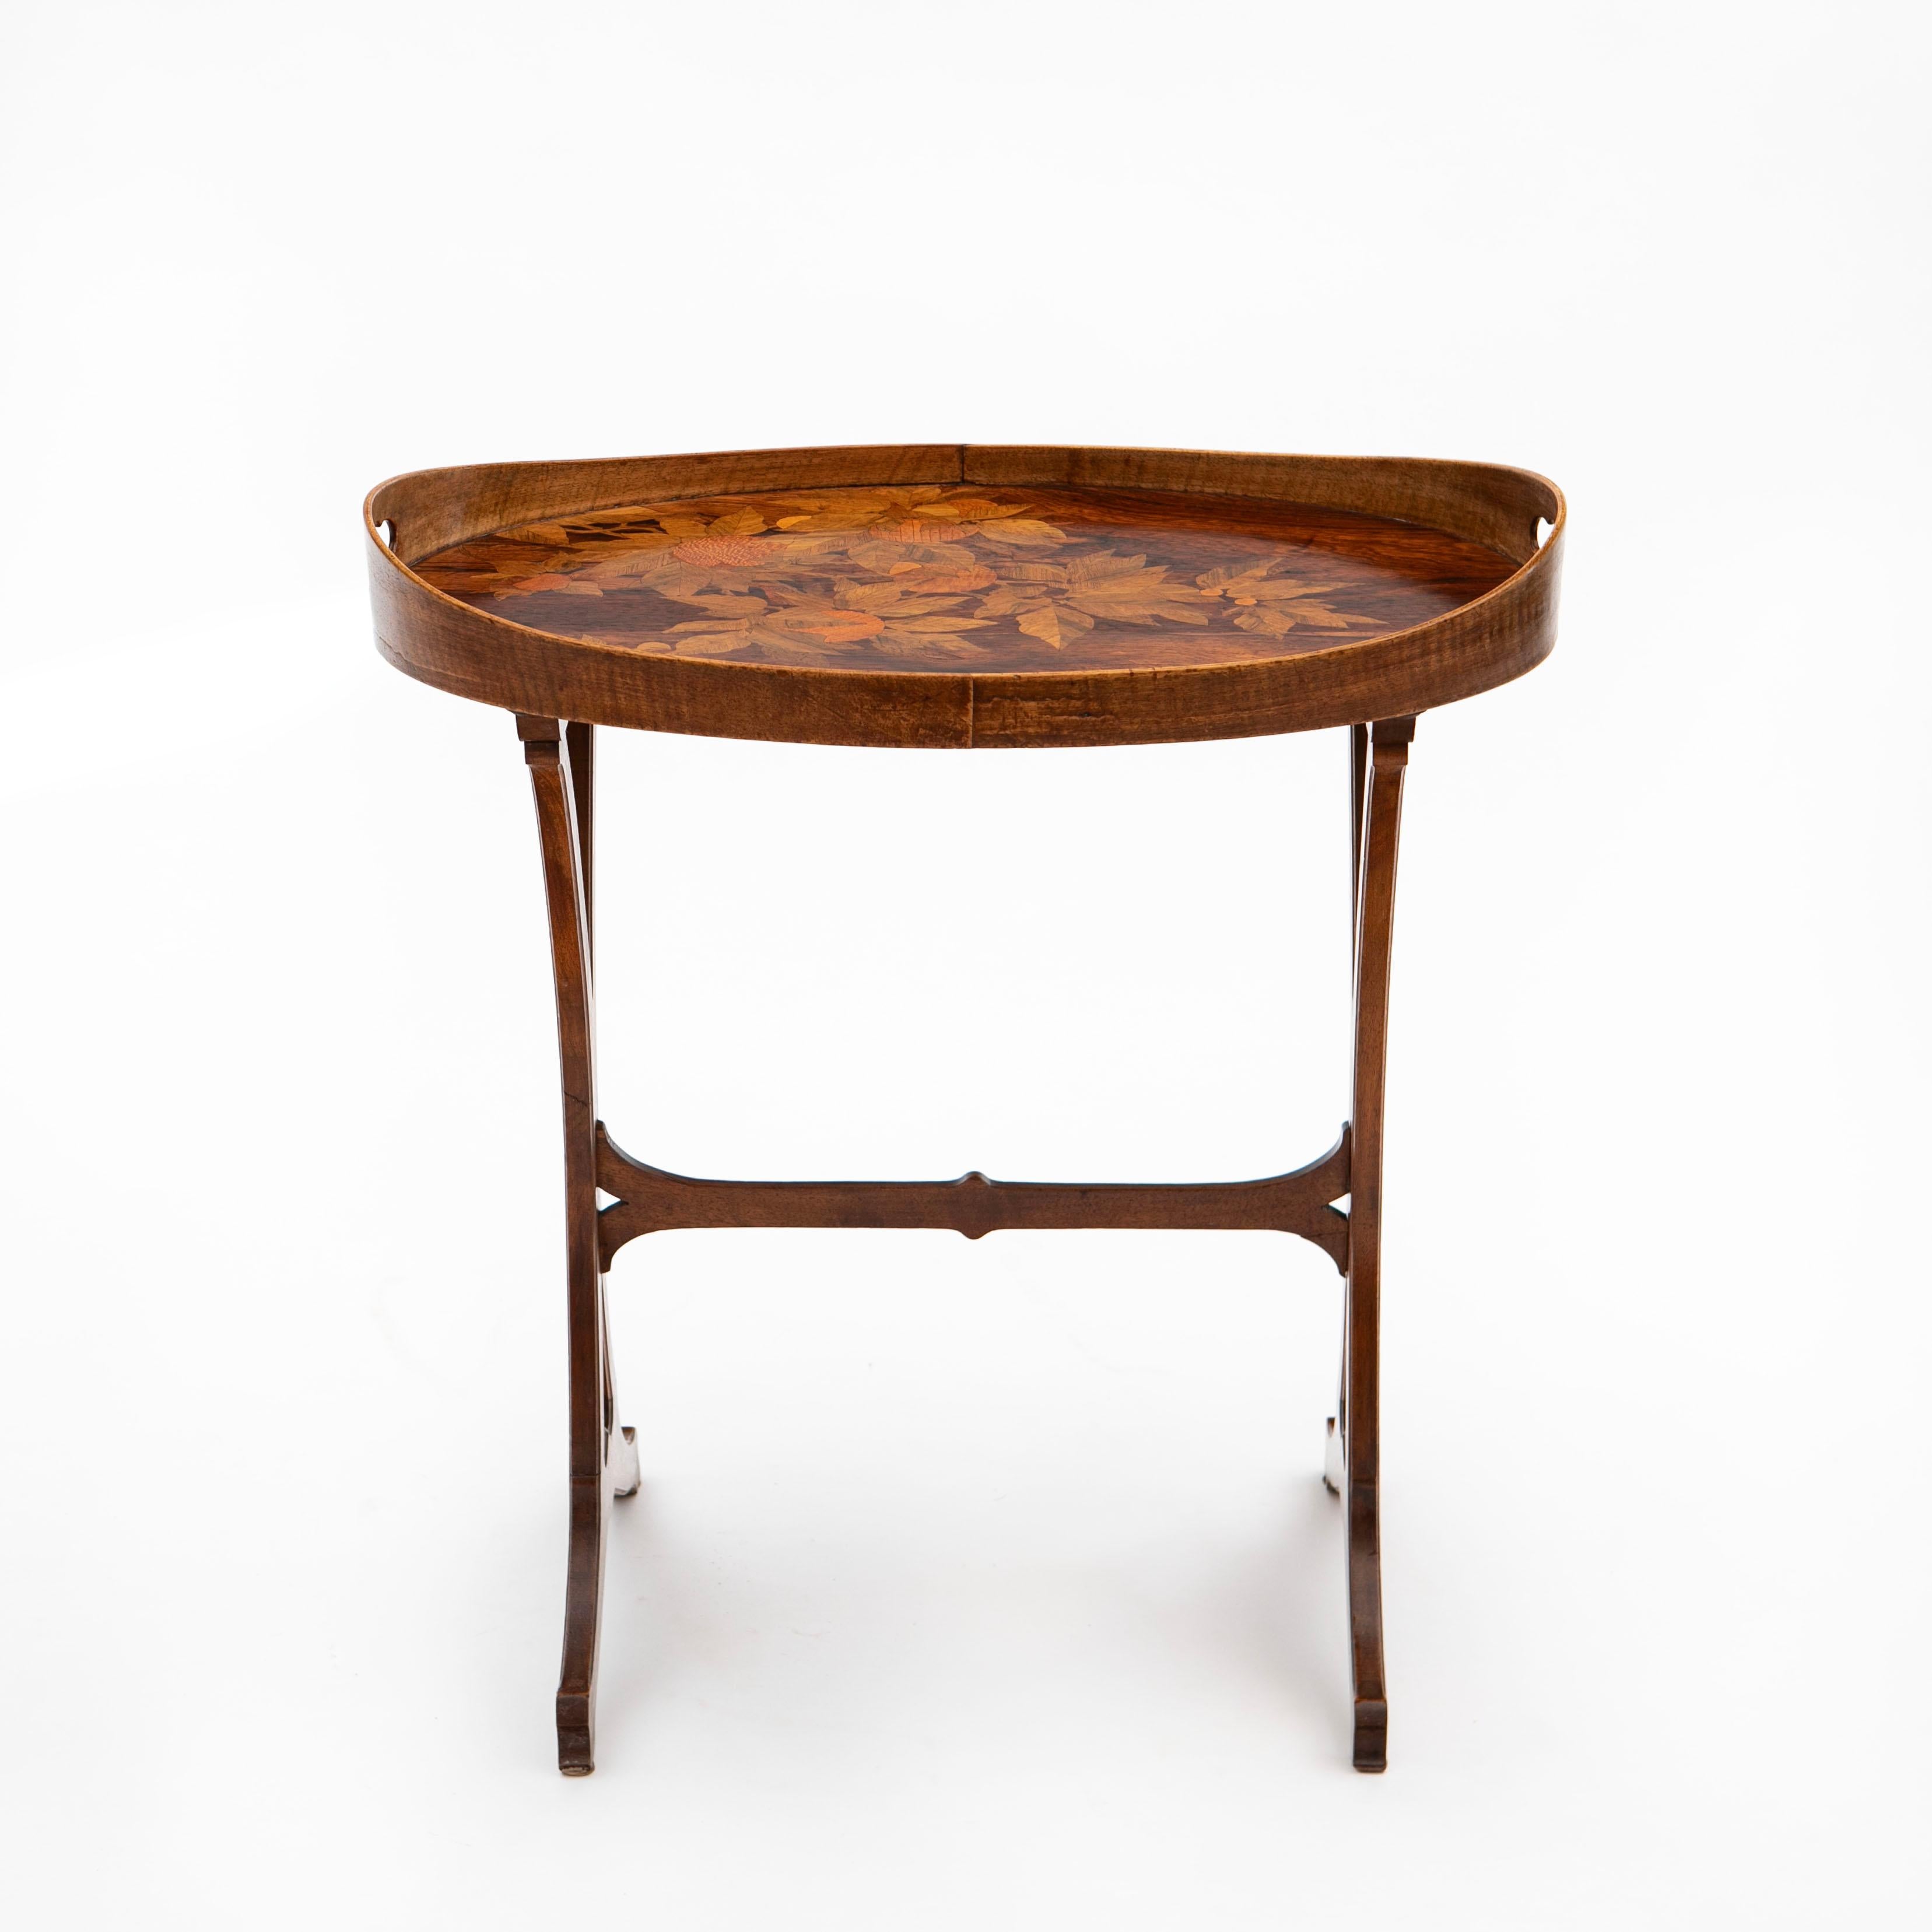 Emile Gallé, 1846-1904
Ein französischer Jugendstil-Tisch aus Nussbaumholz.
Die Tischplatte ist mit exquisiten floralen Intarsien aus Obstholz und verschiedenen Holzarten verziert.
Mit Tischlerzeichen: Gallé.
Unberührter originaler guter